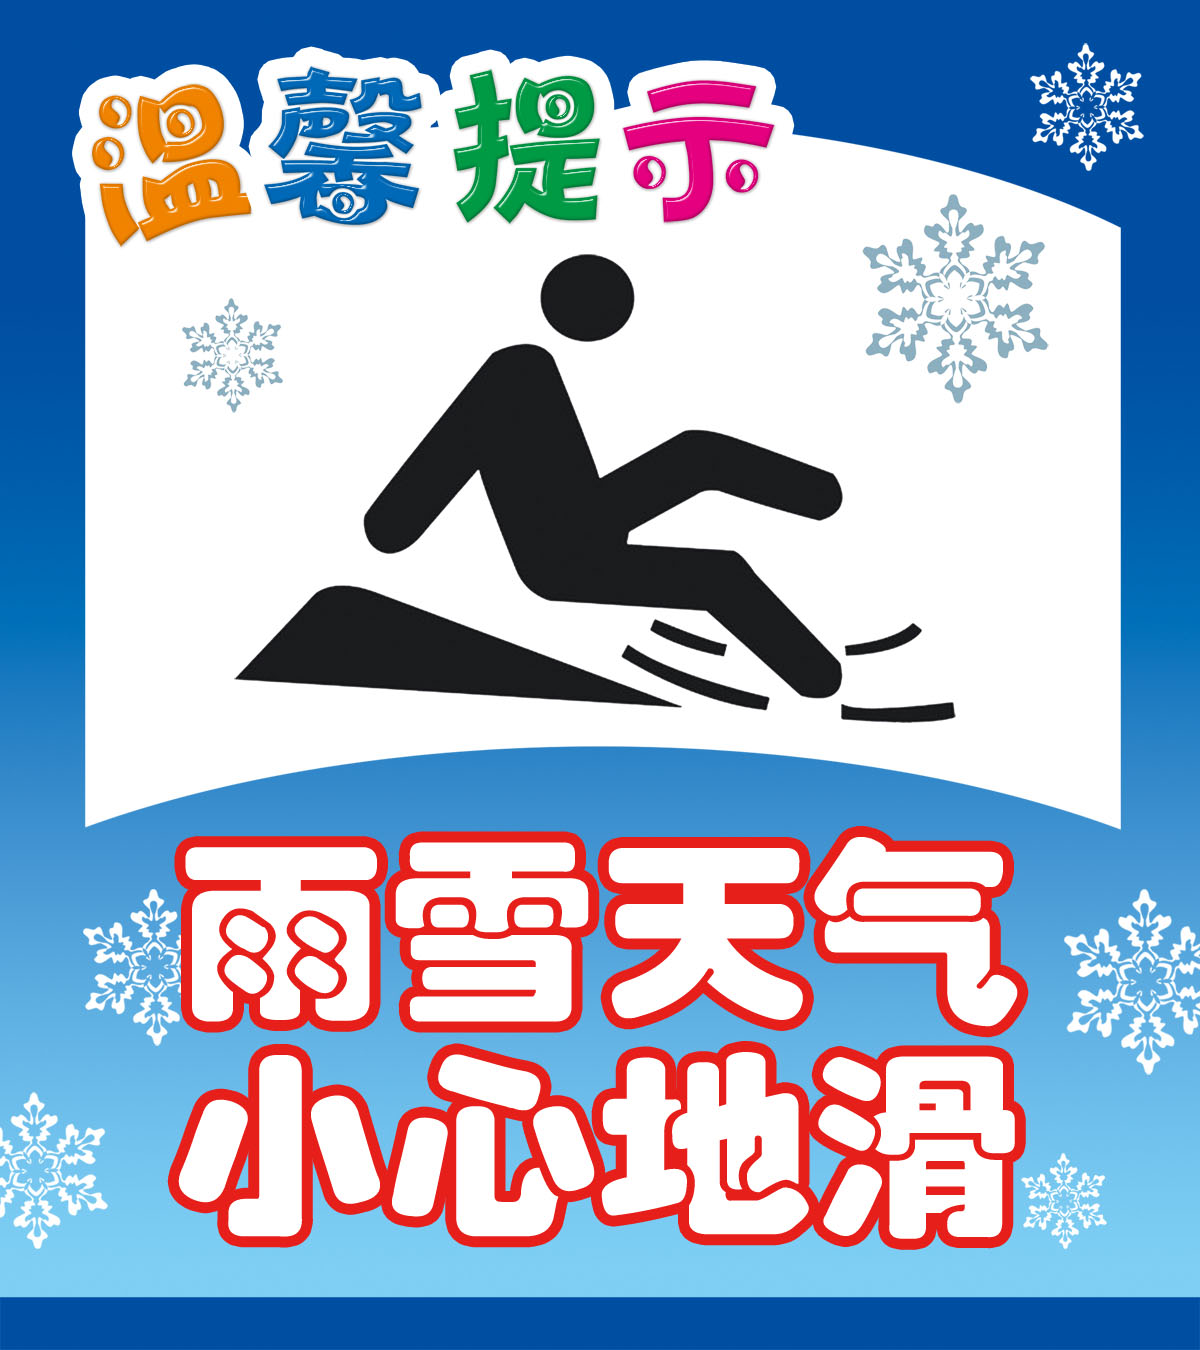 751海报印制展板写真喷绘244下雪安全温馨提示雨雪天气小心地滑